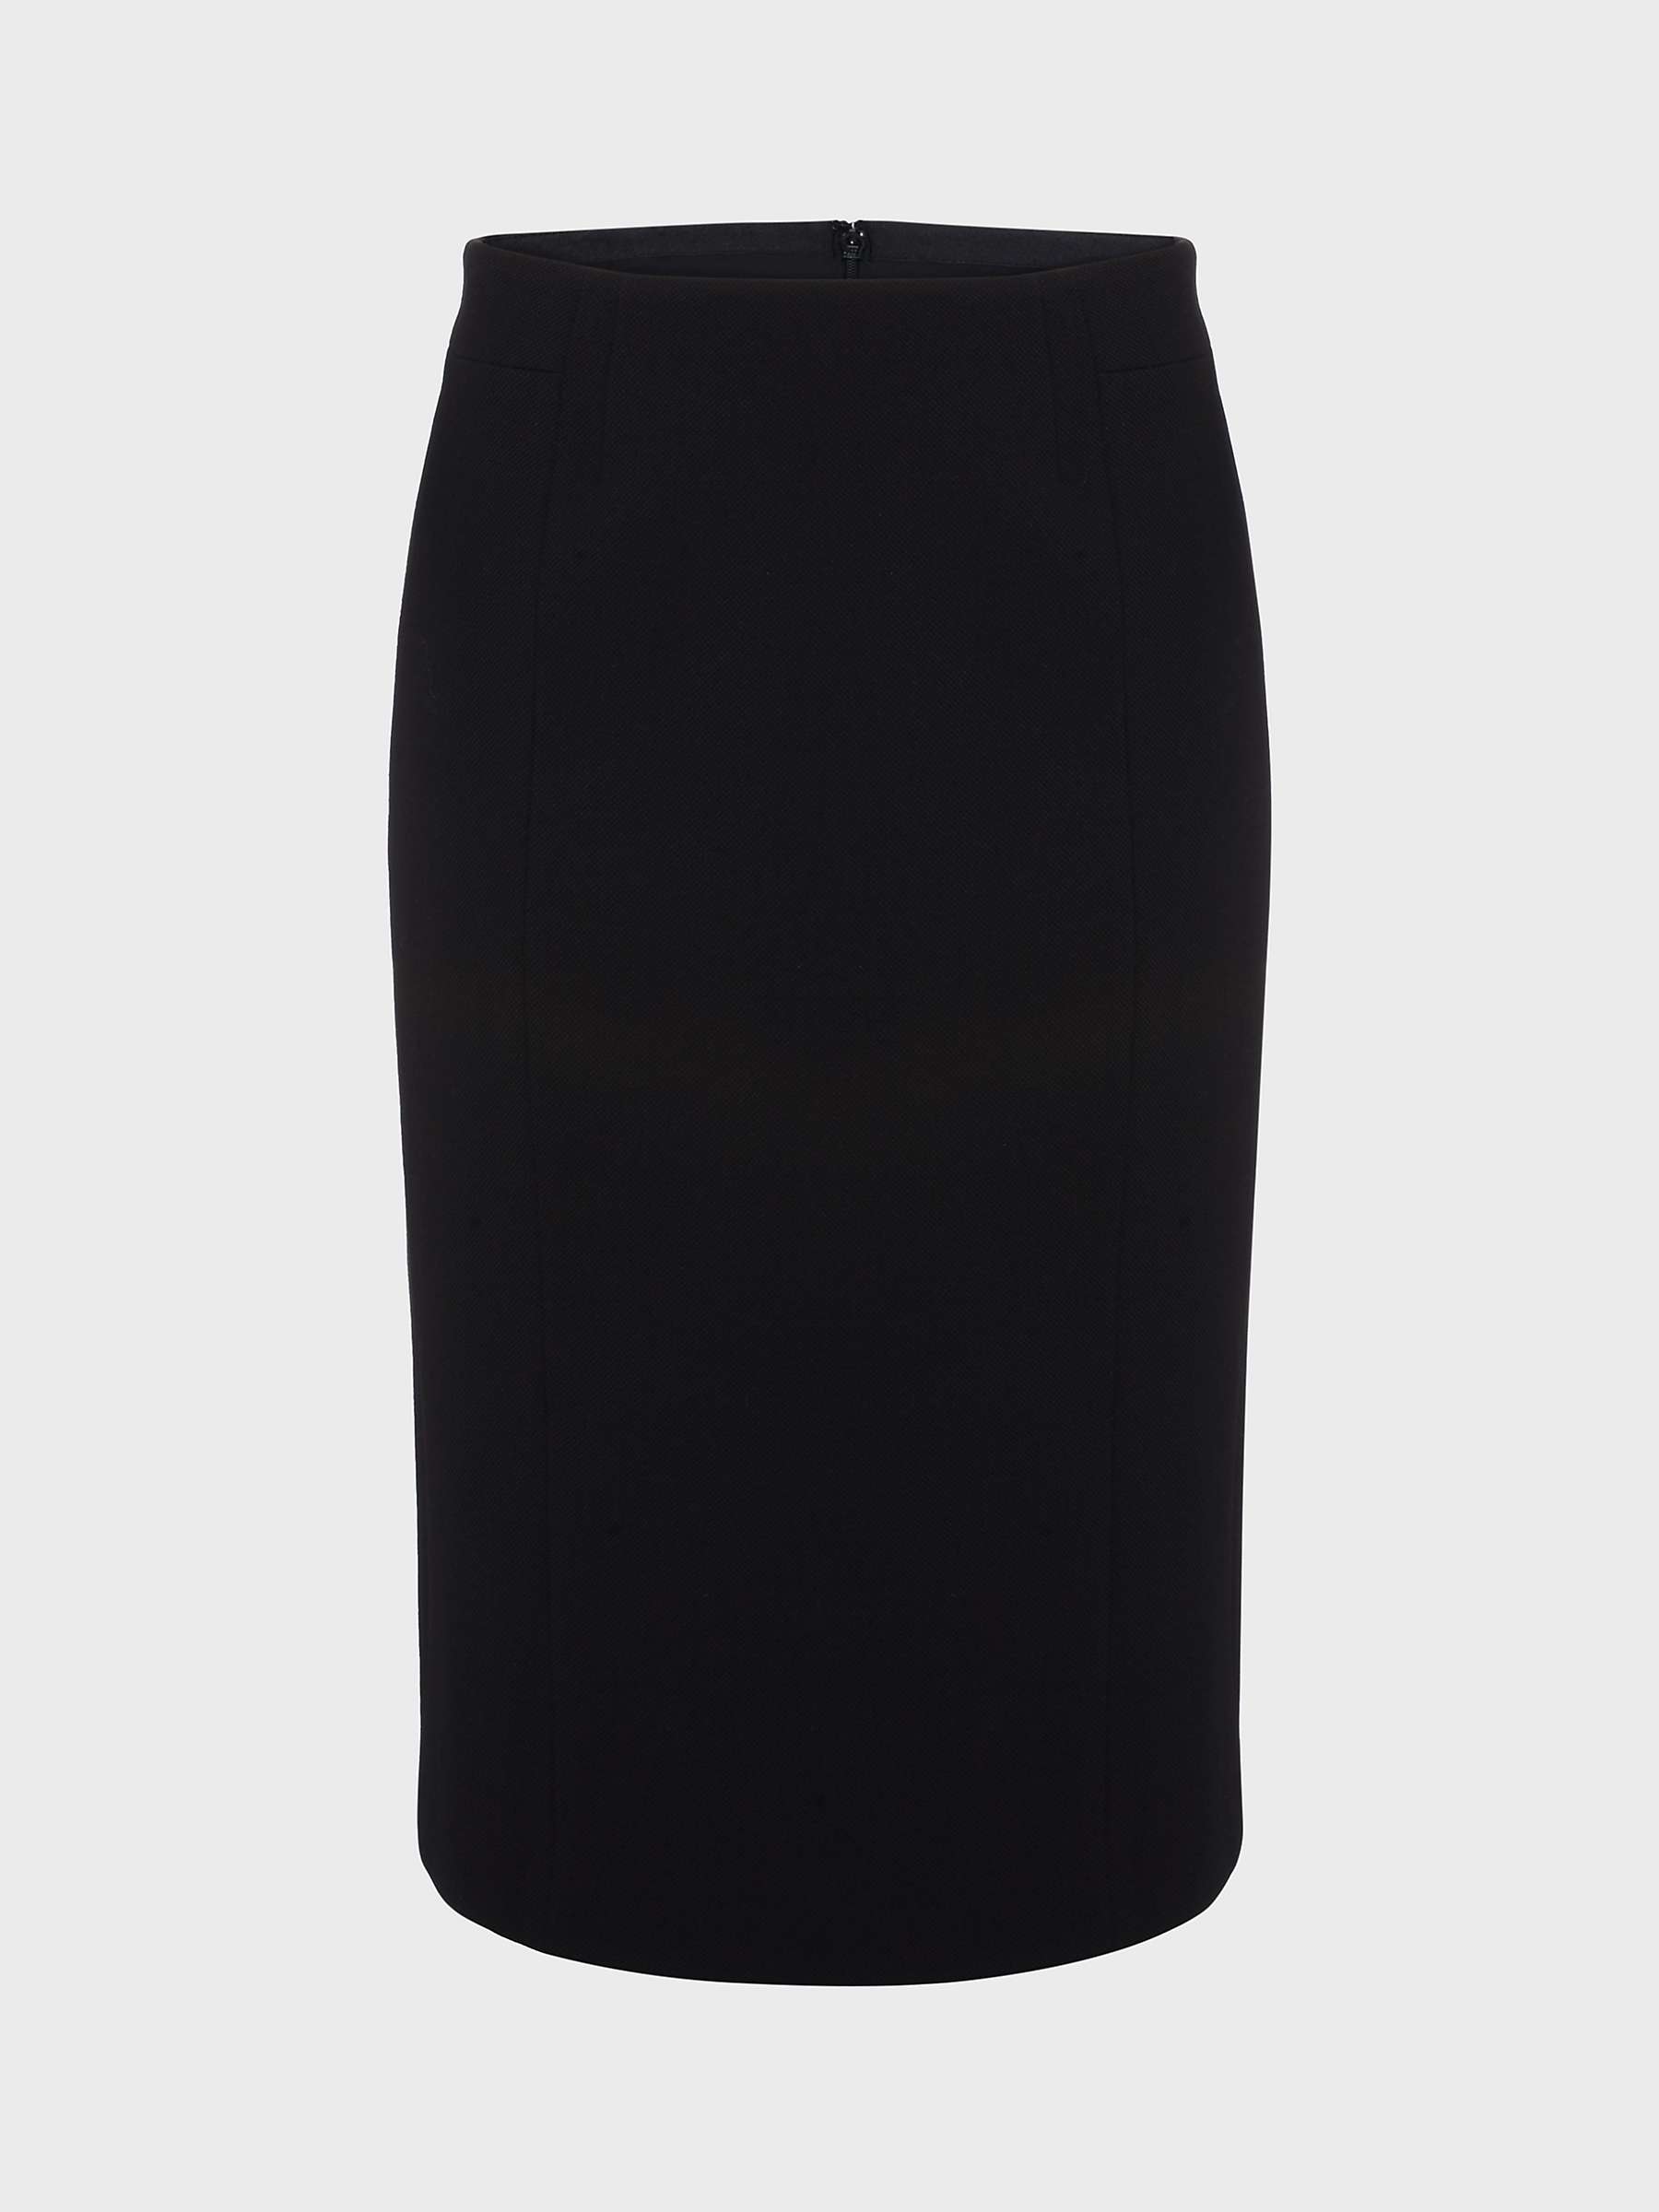 Buy Hobbs Petite Charley Pencil Skirt, Black Online at johnlewis.com